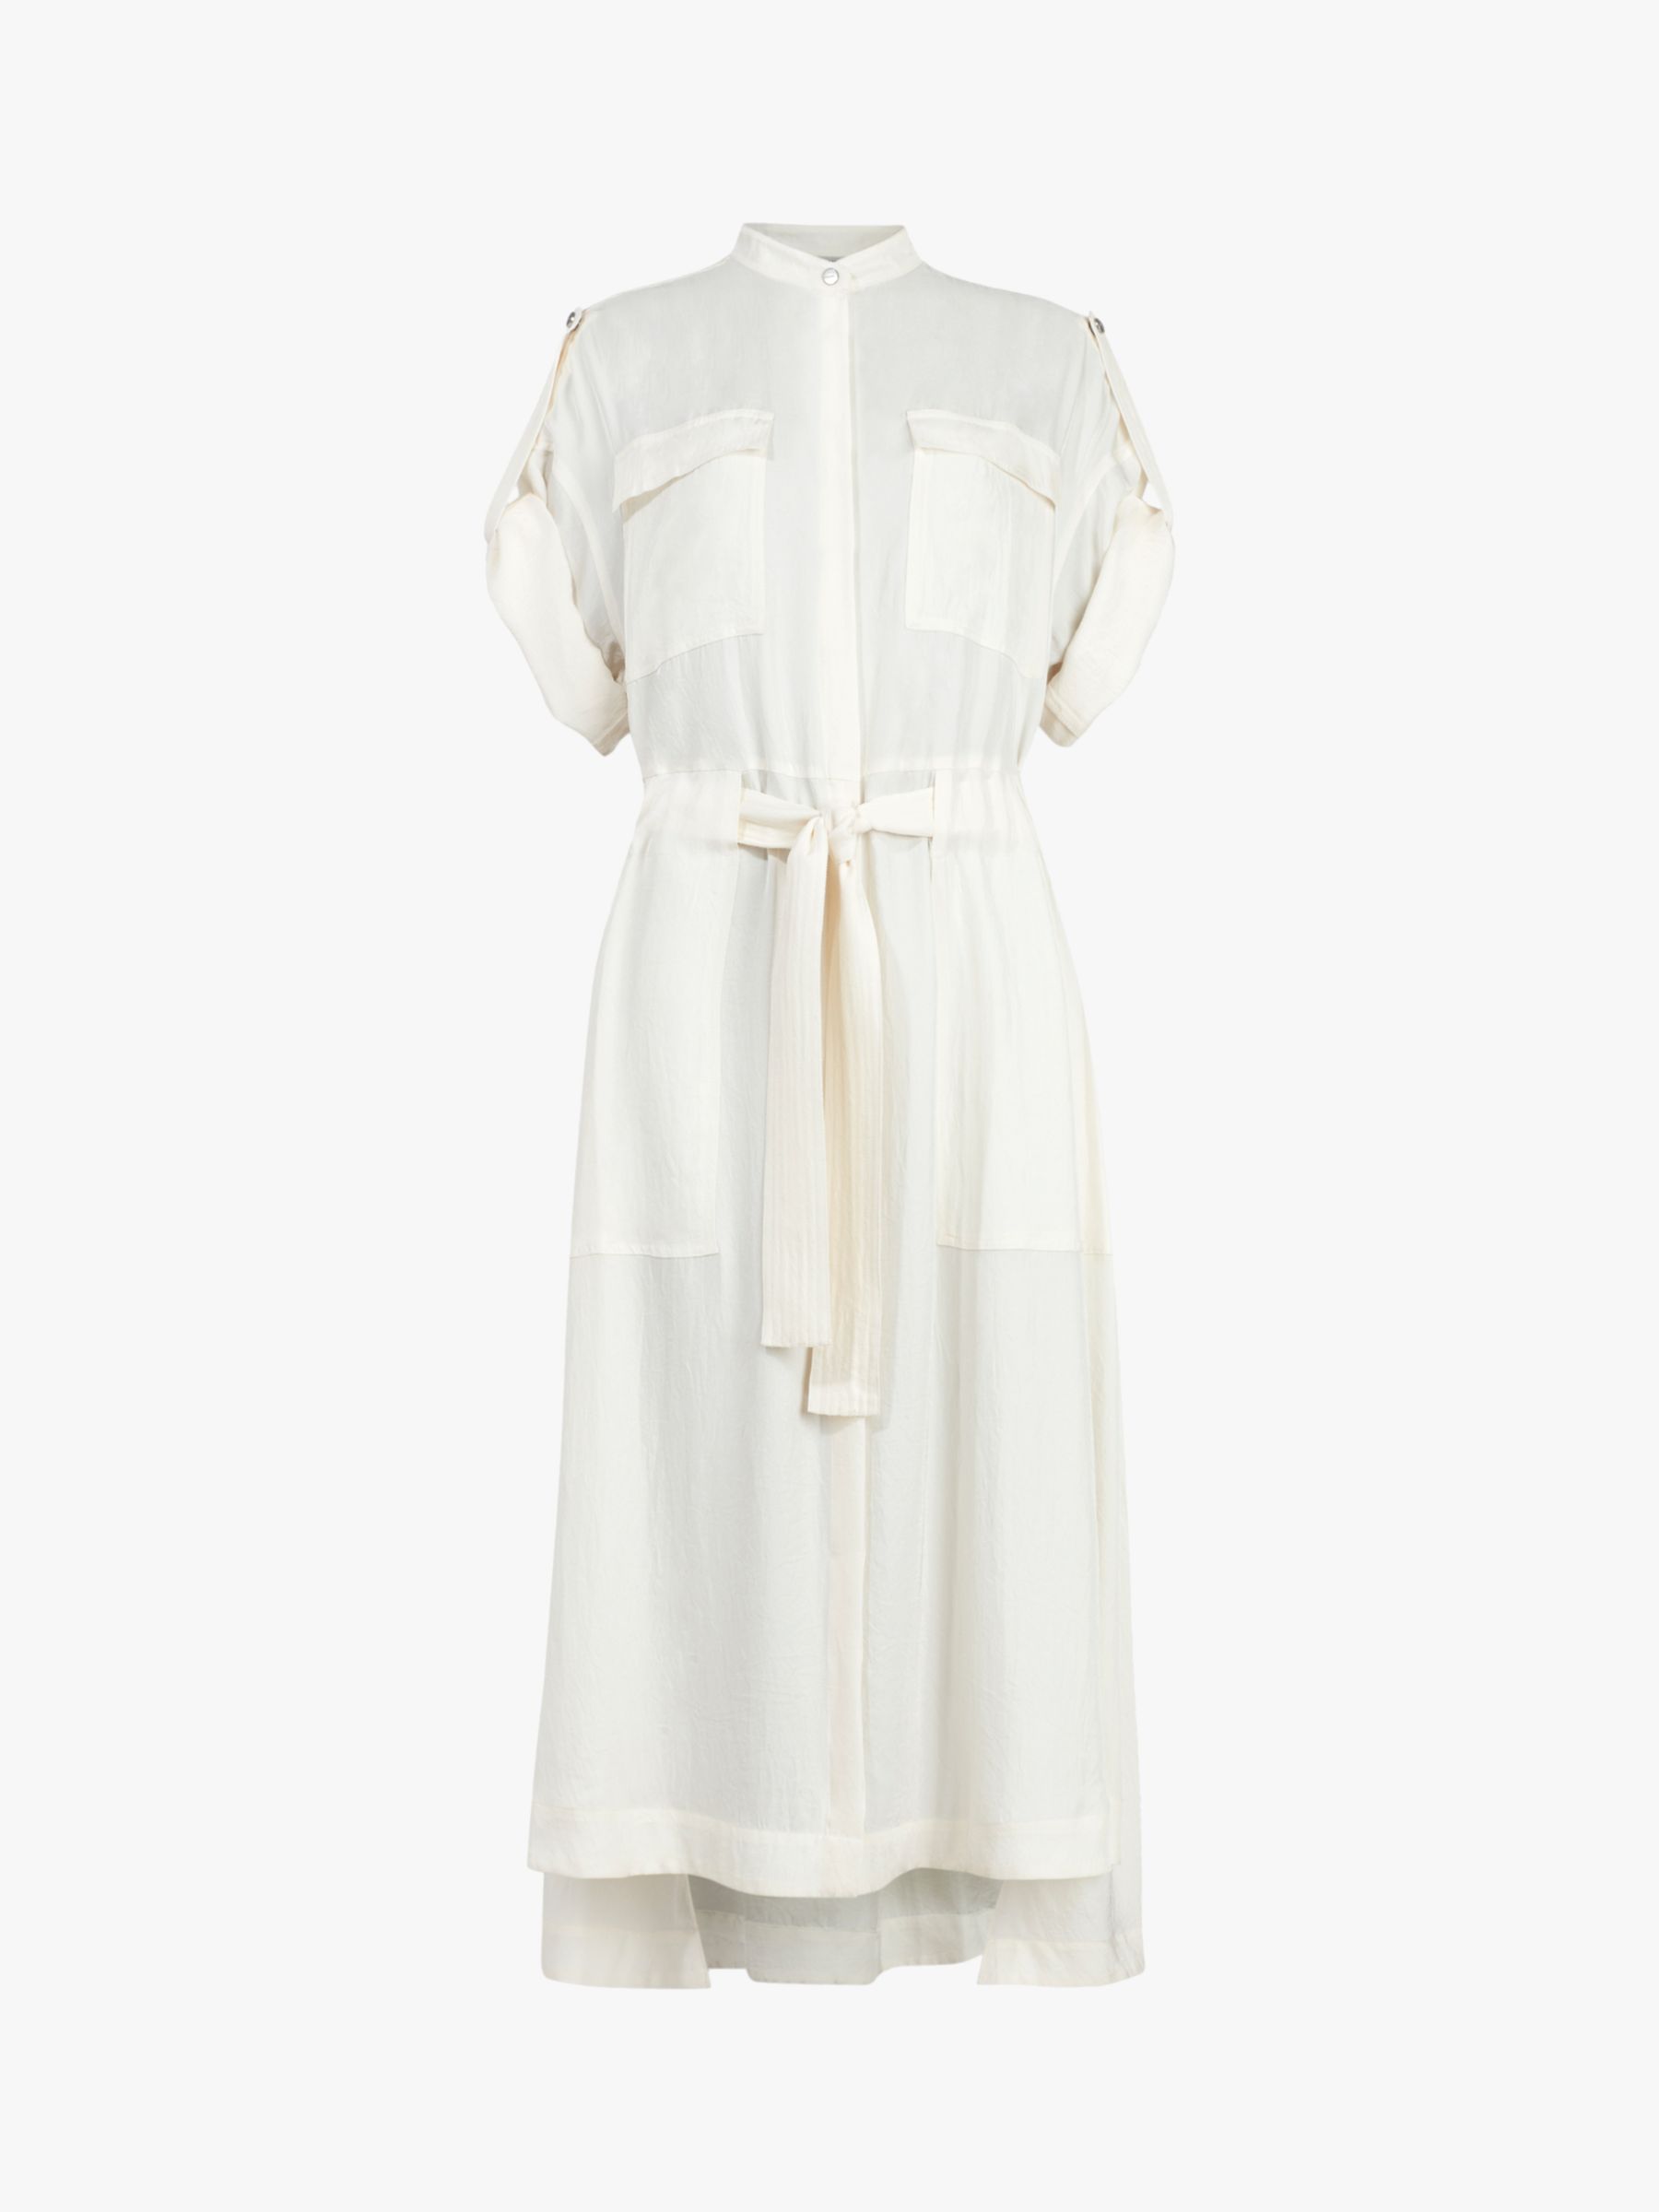 AllSaints Luciana Midi Shirt Dress, Ecru White